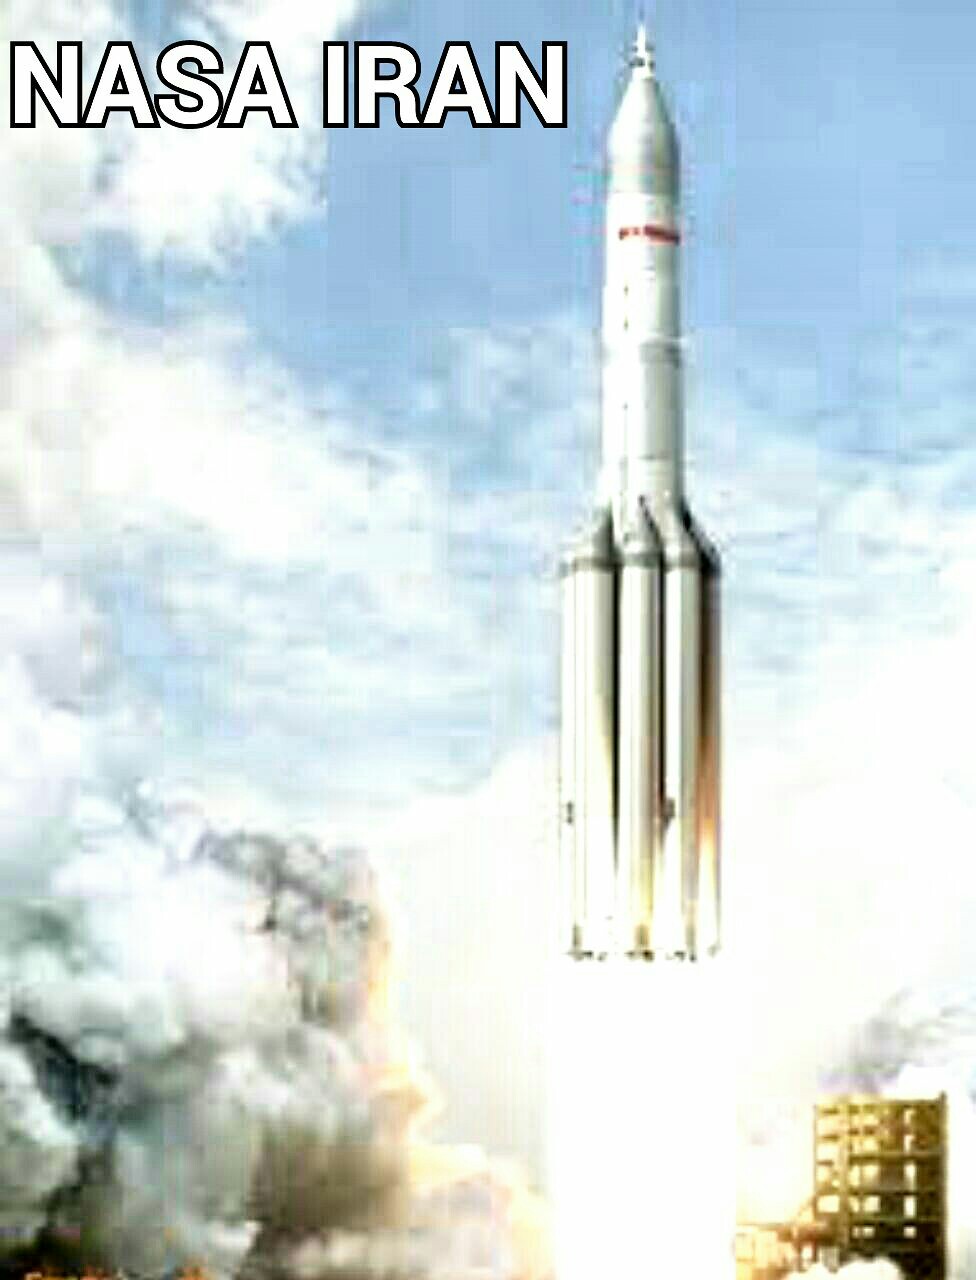  راکت vulcan-hercules اتحاد جماهیر شوروی